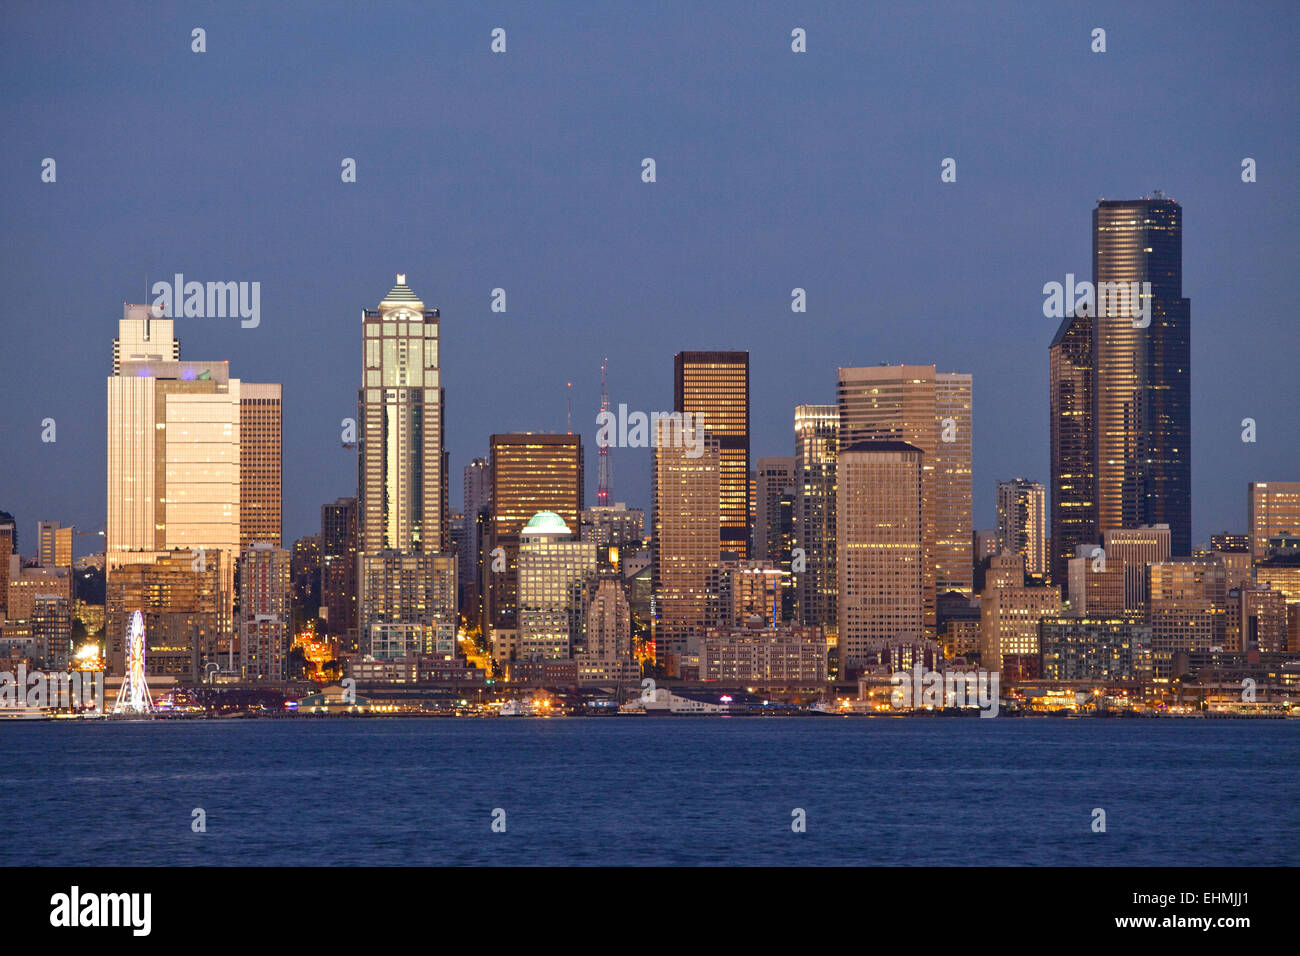 Seattle city skyline on waterfront, Washington, United States Stock Photo